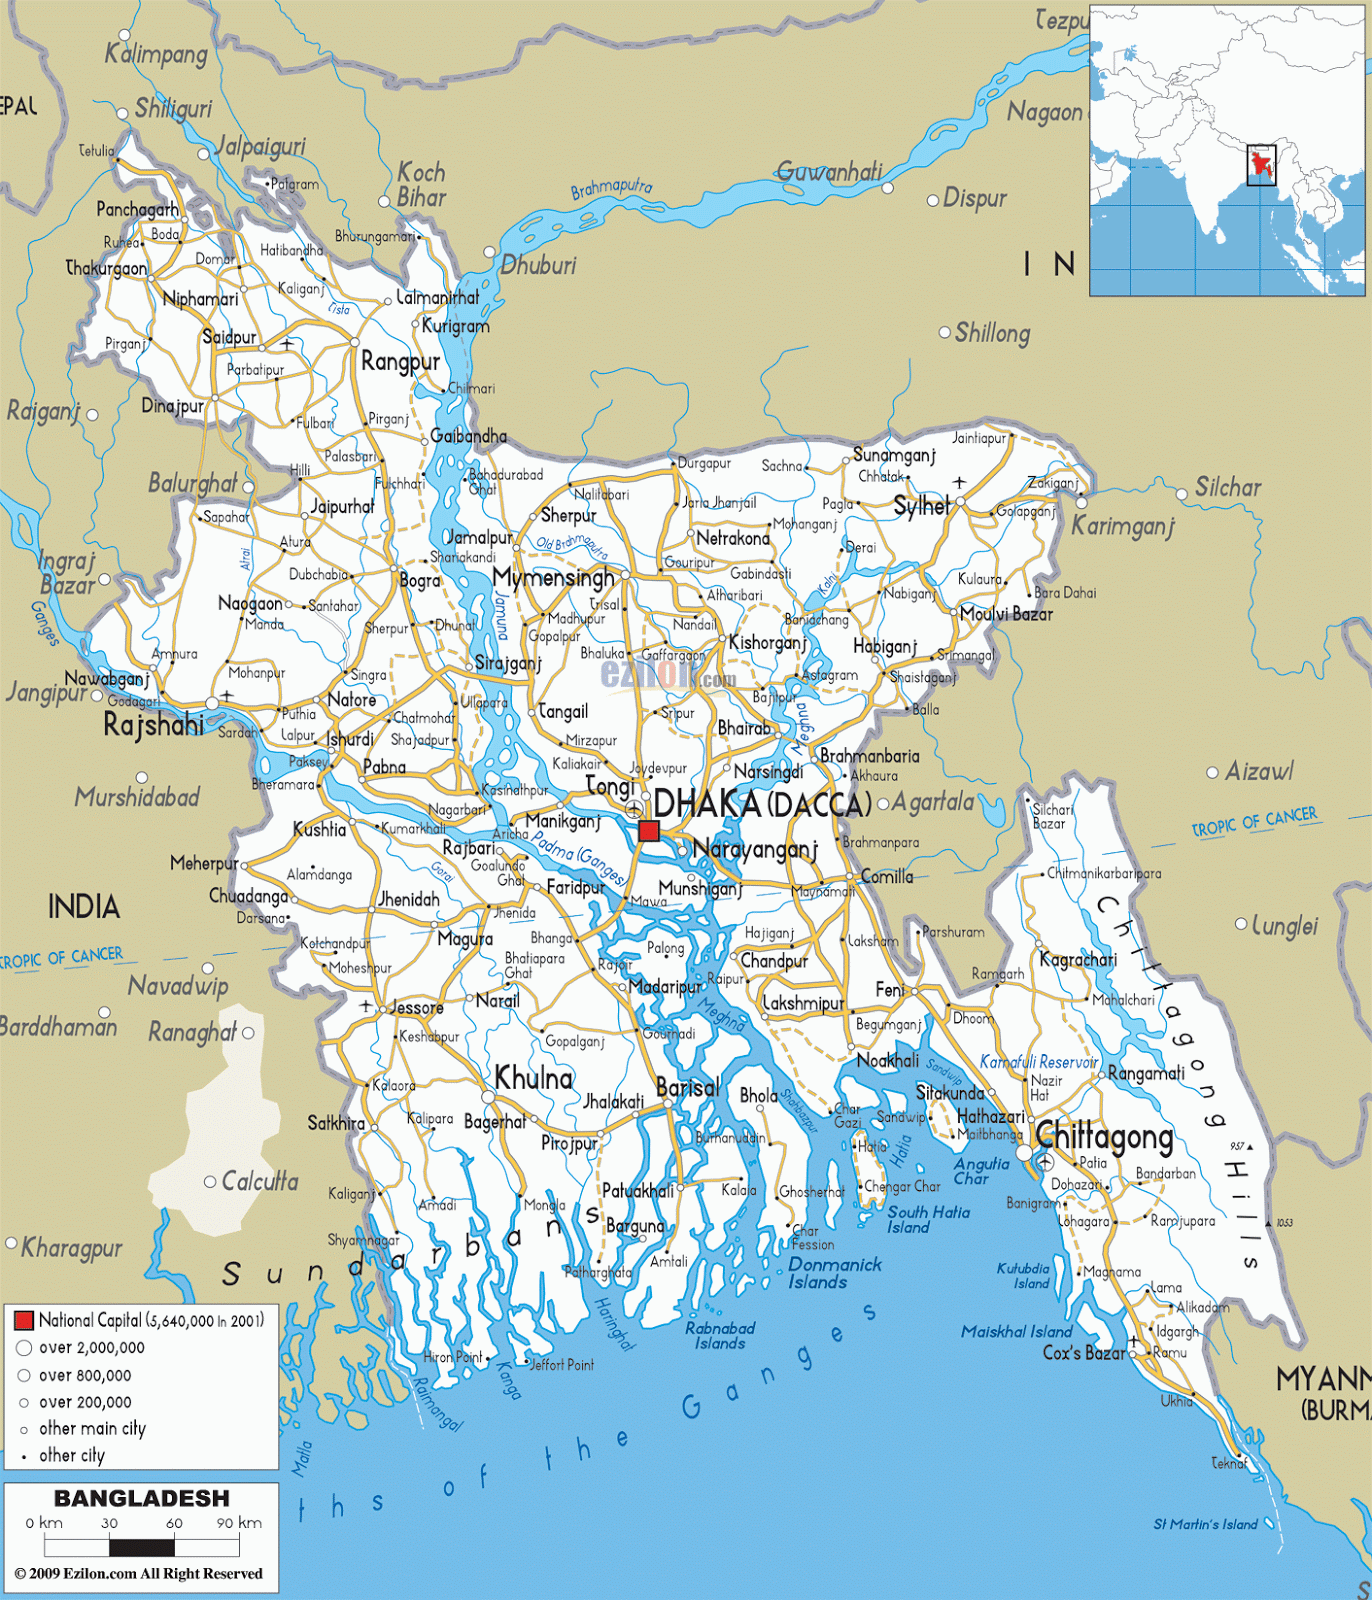 BANGLADESH - GEOGRAPHICAL MAPS OF BANGLADESH